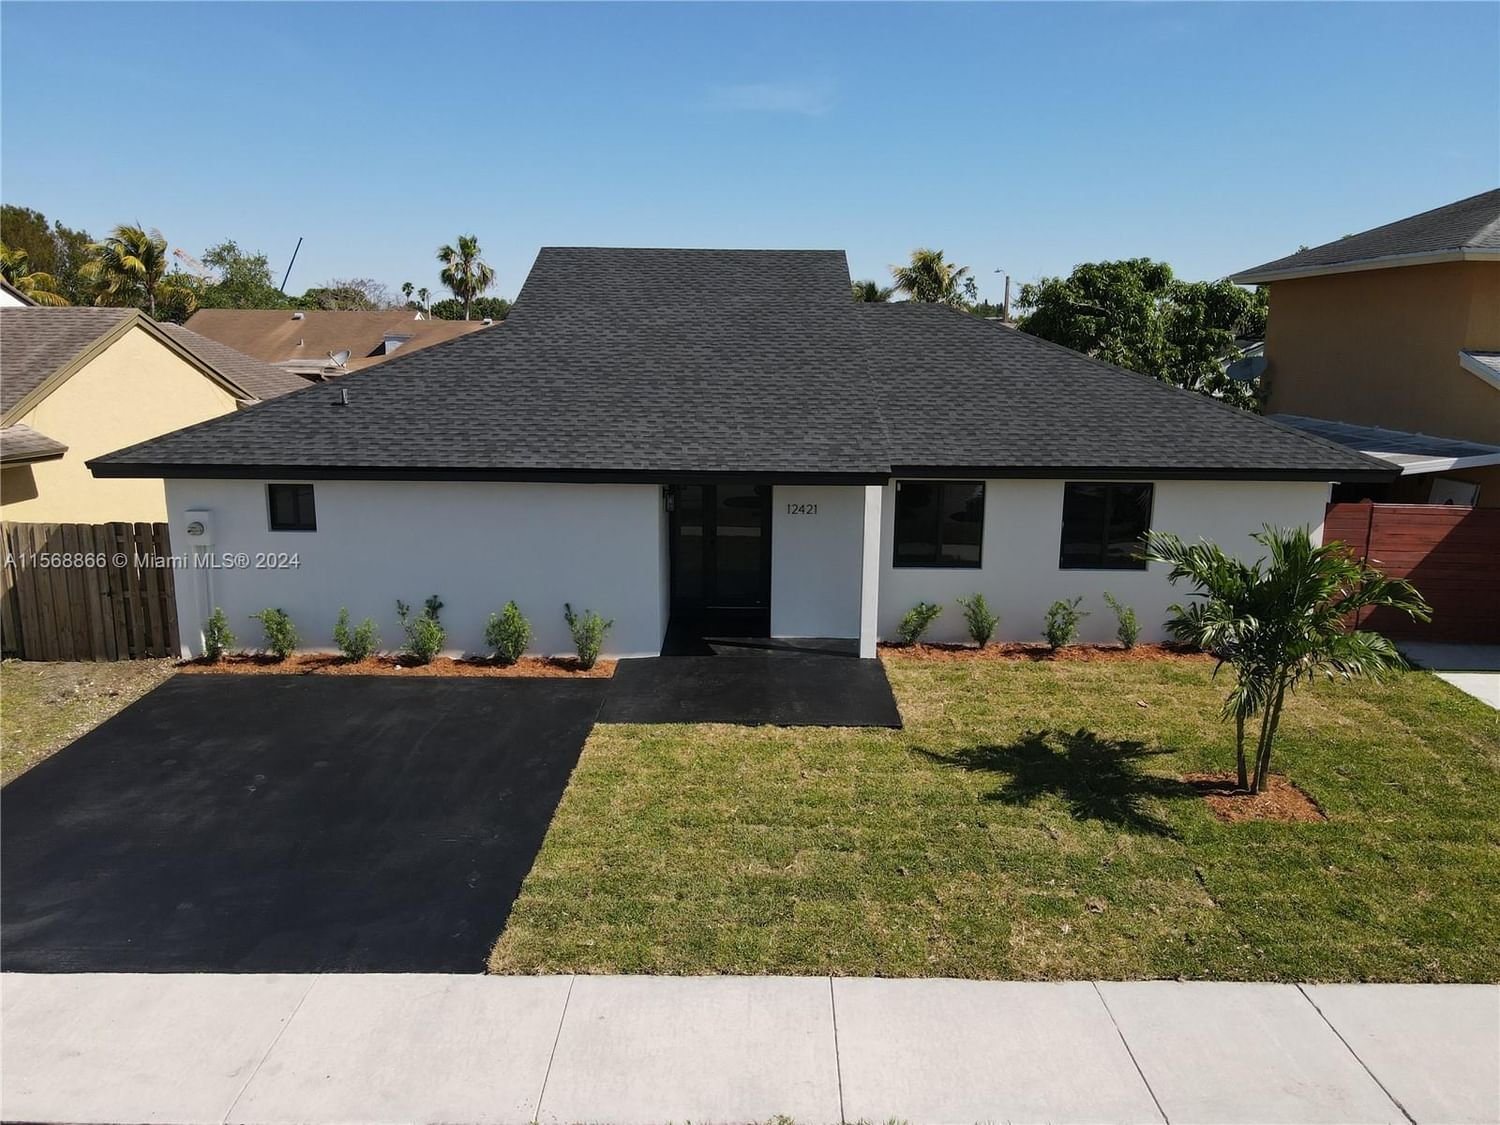 Real estate property located at 12421 203rd St, Miami-Dade County, OAK PARK ESTATES SEC 1, Miami, FL